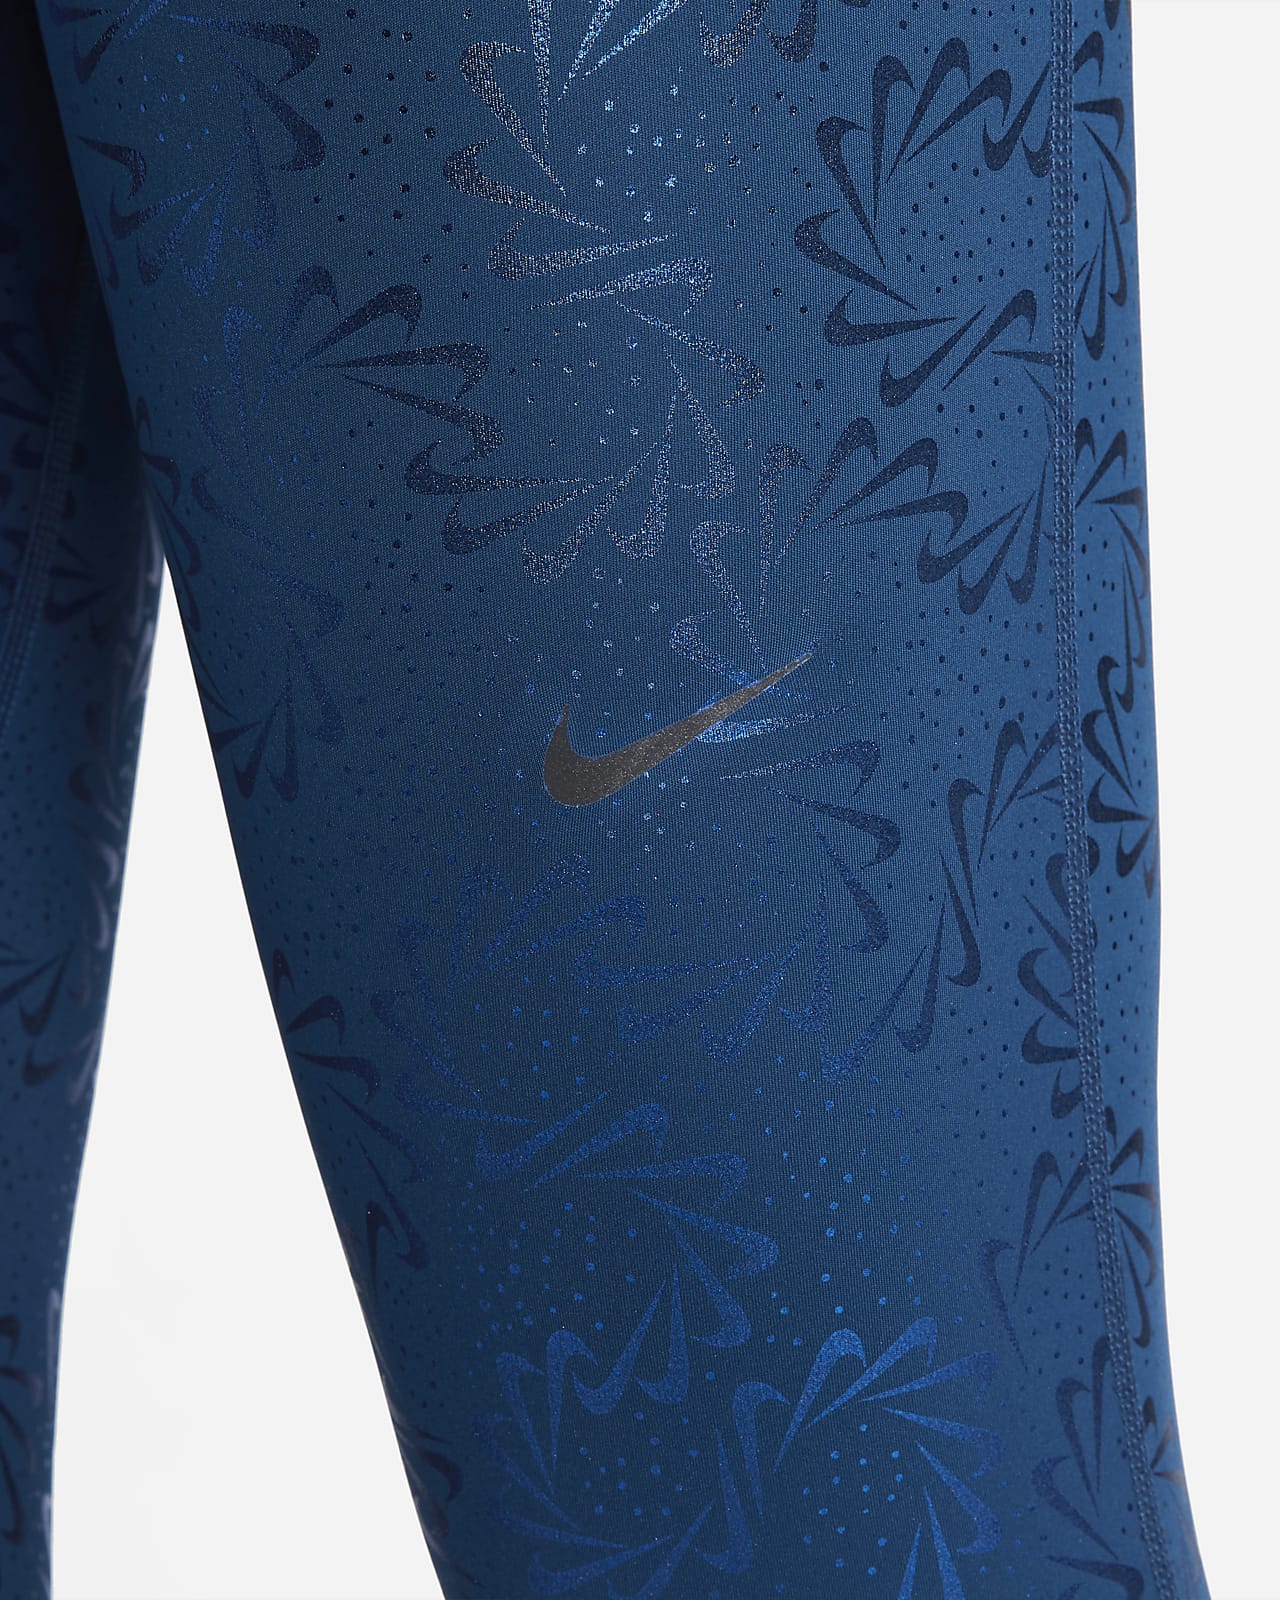 Nike Pro Women's Mid-Rise Allover Print Leggings